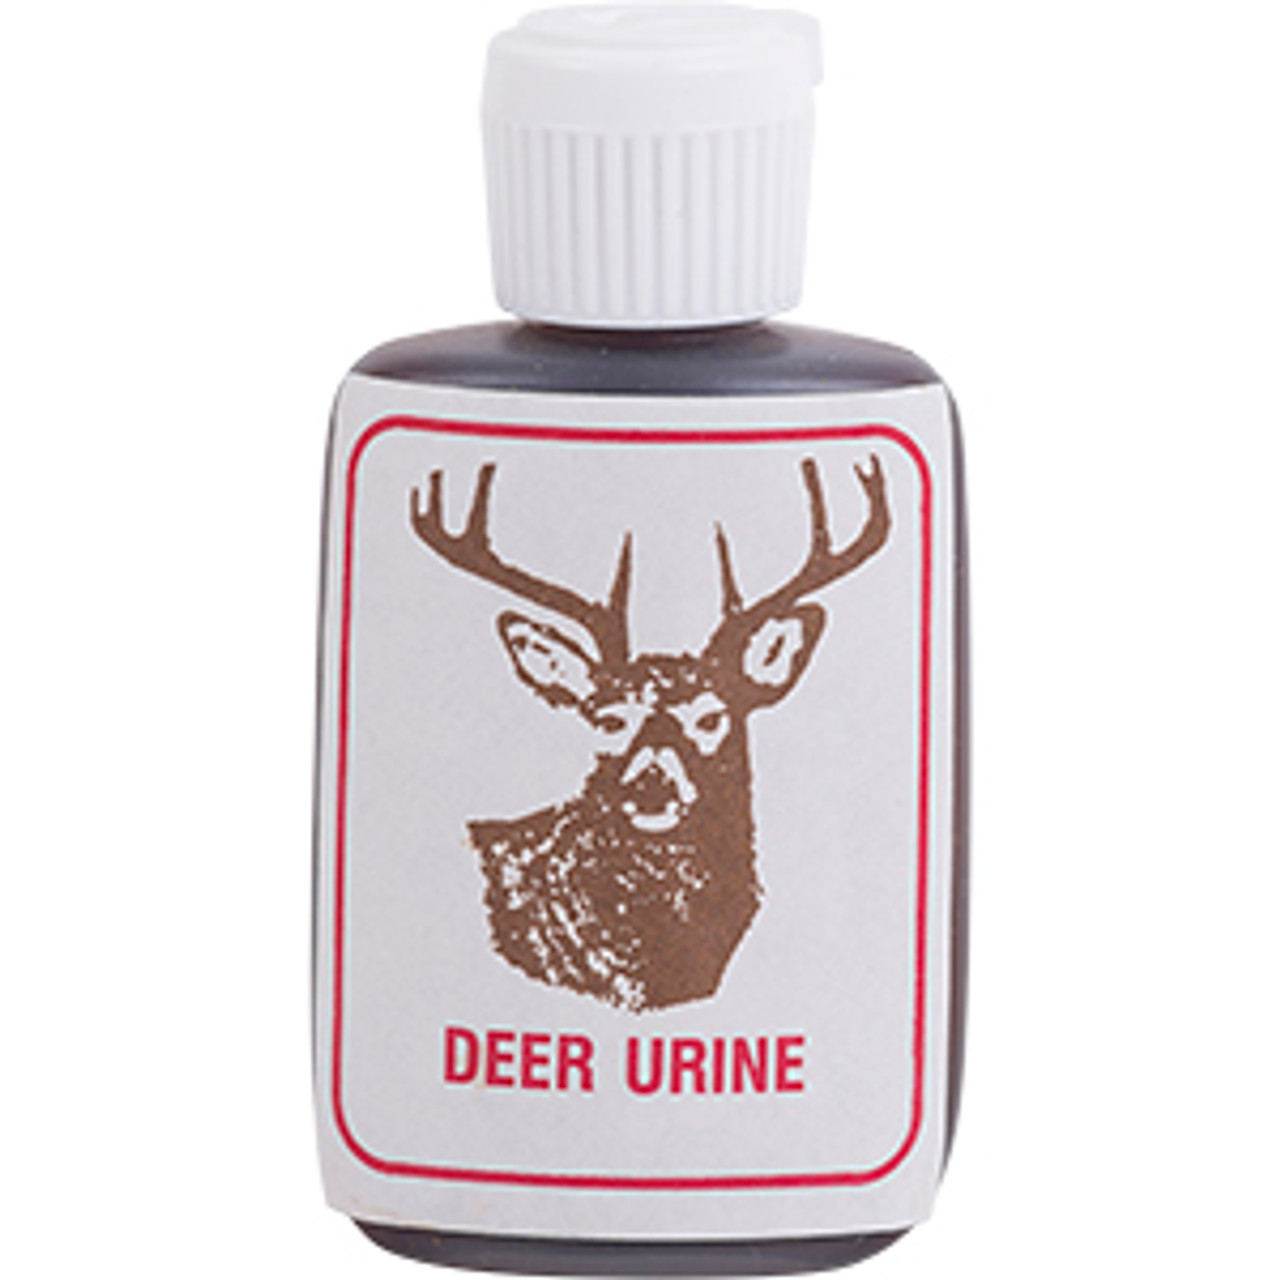 Pure Deer Urine - The Ultimate Deer Lures - Sterling Fur Company